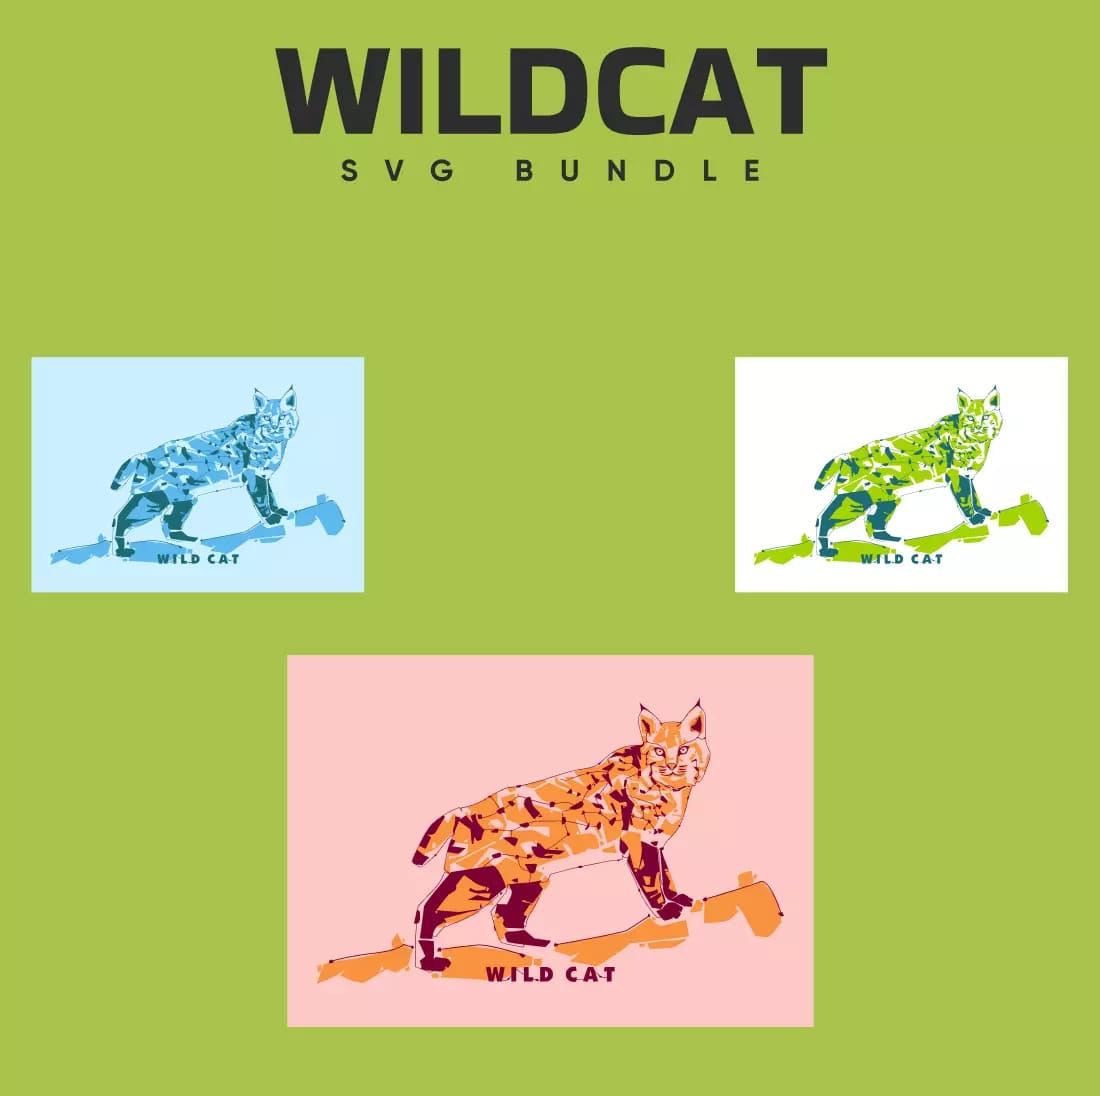 The wildcat svg bundle includes a cat.